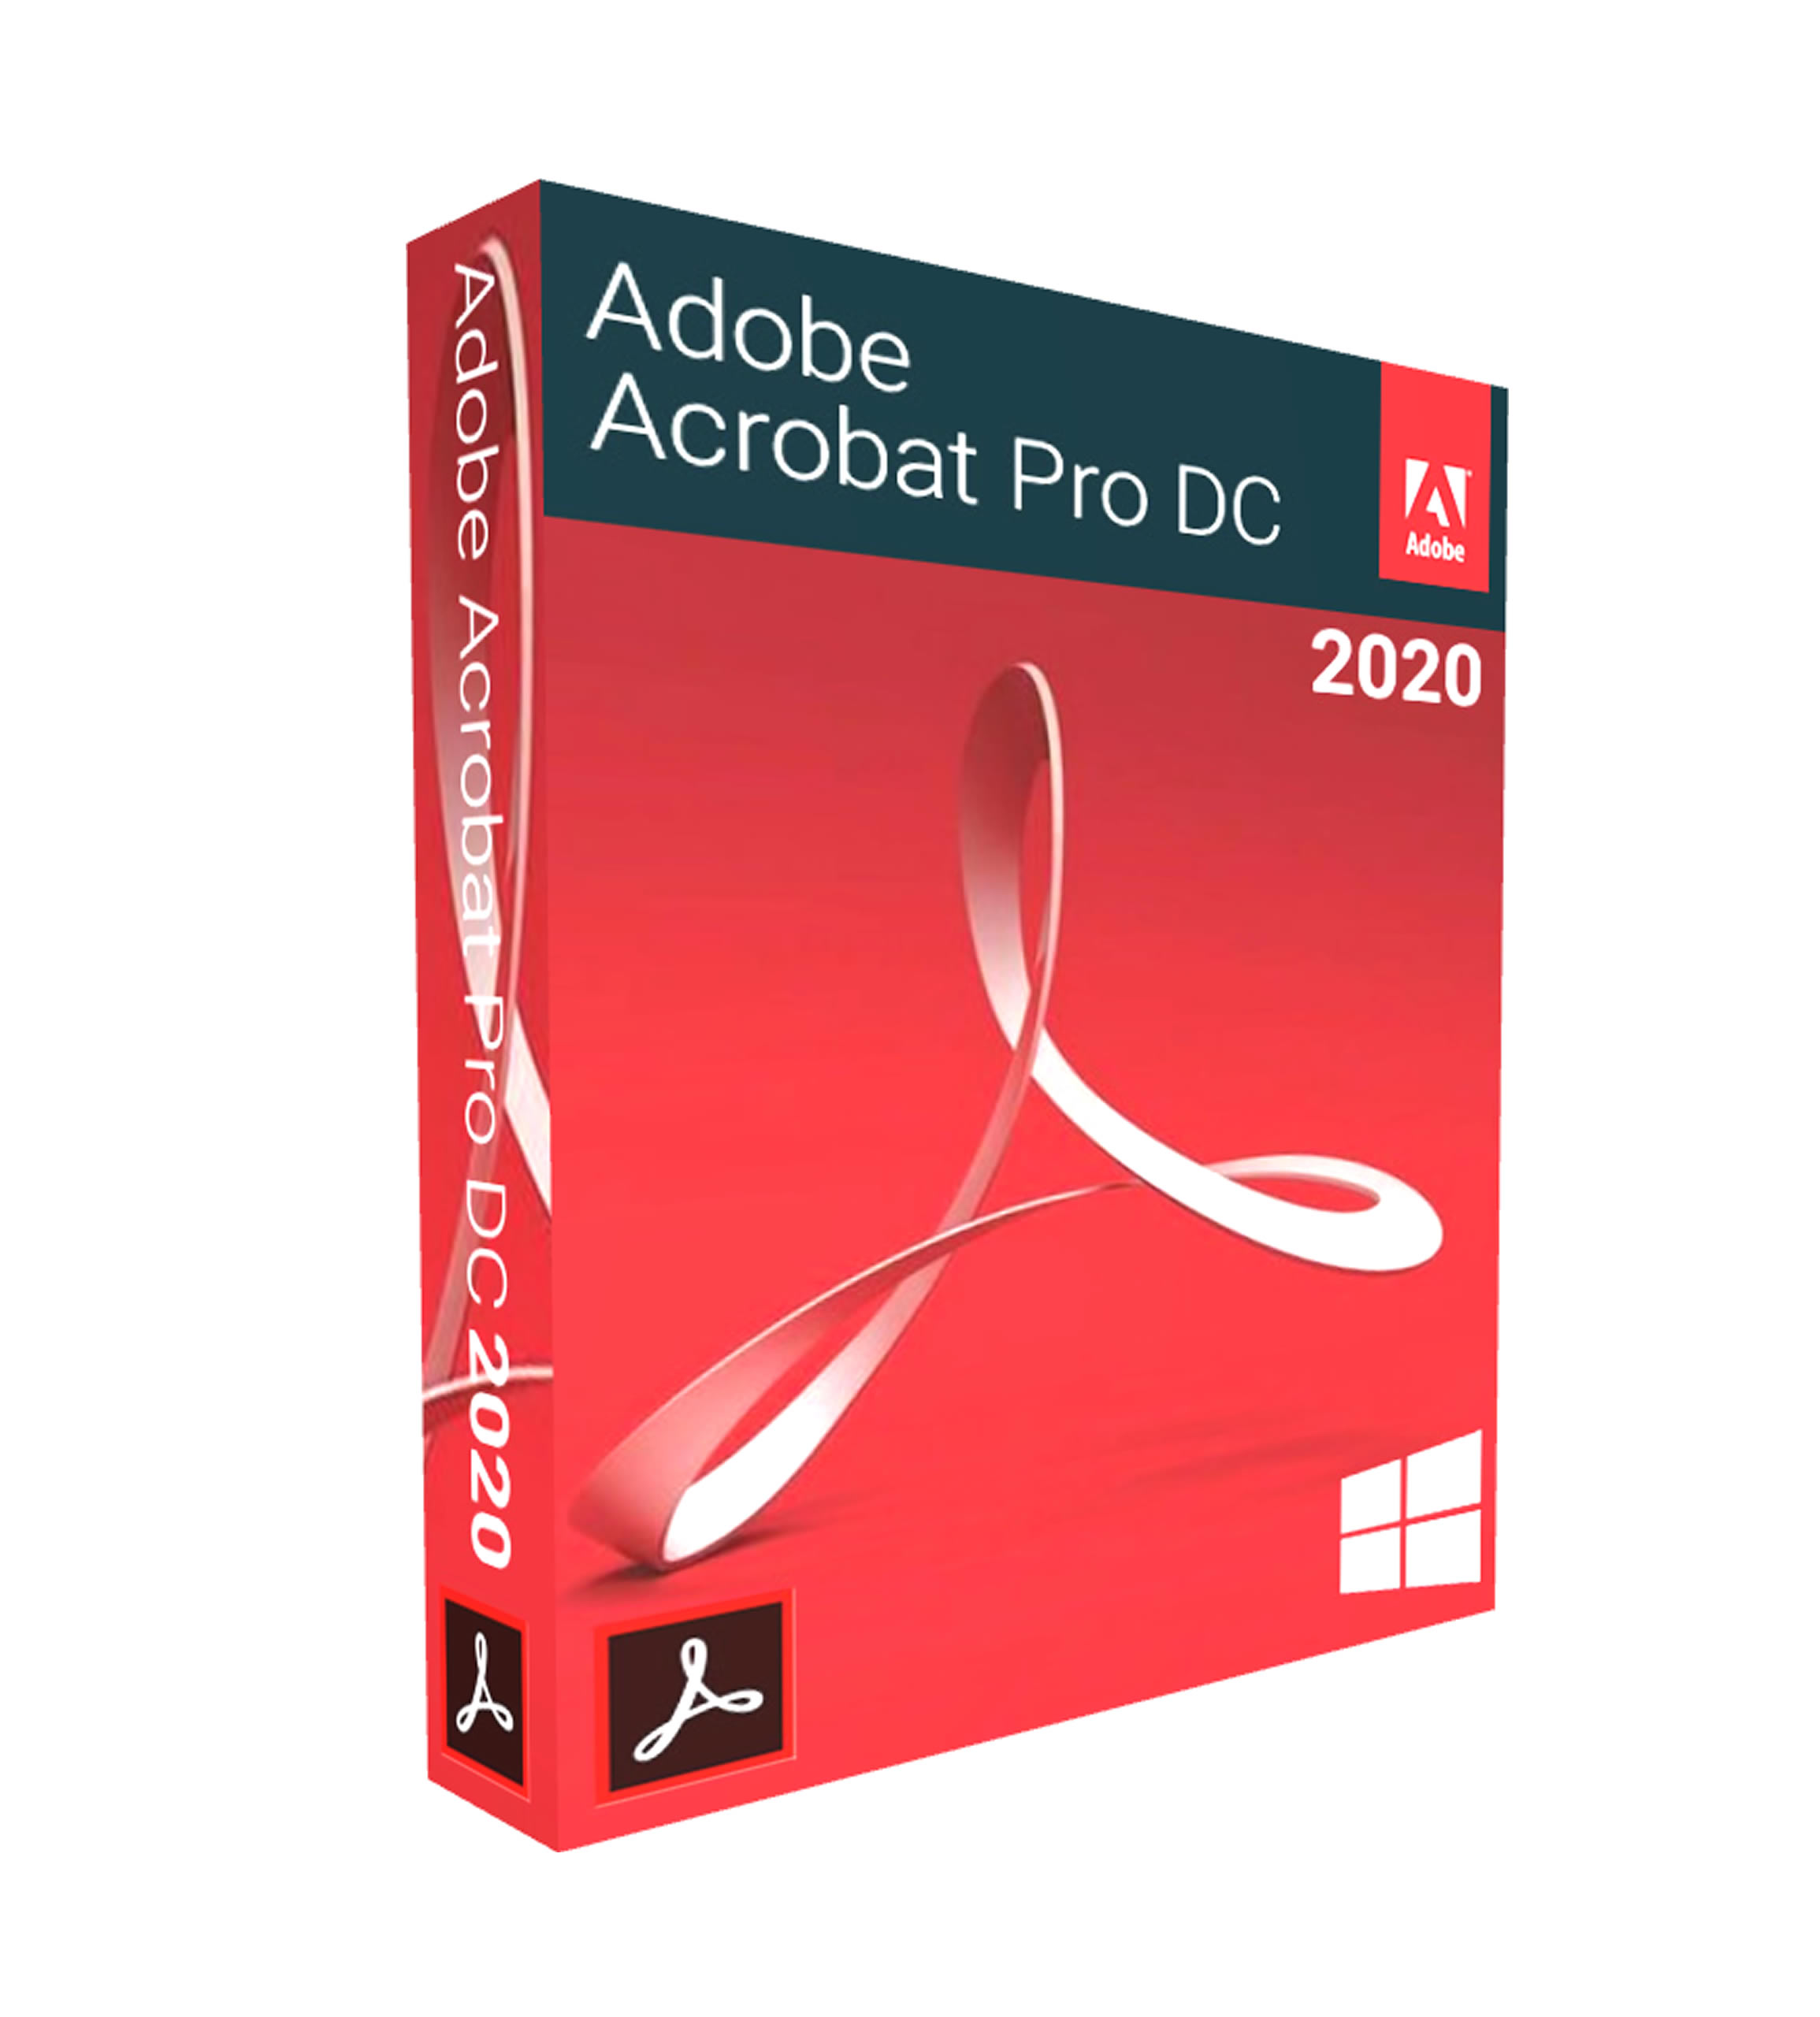 adobe acrobat pro dc 2020 full version download